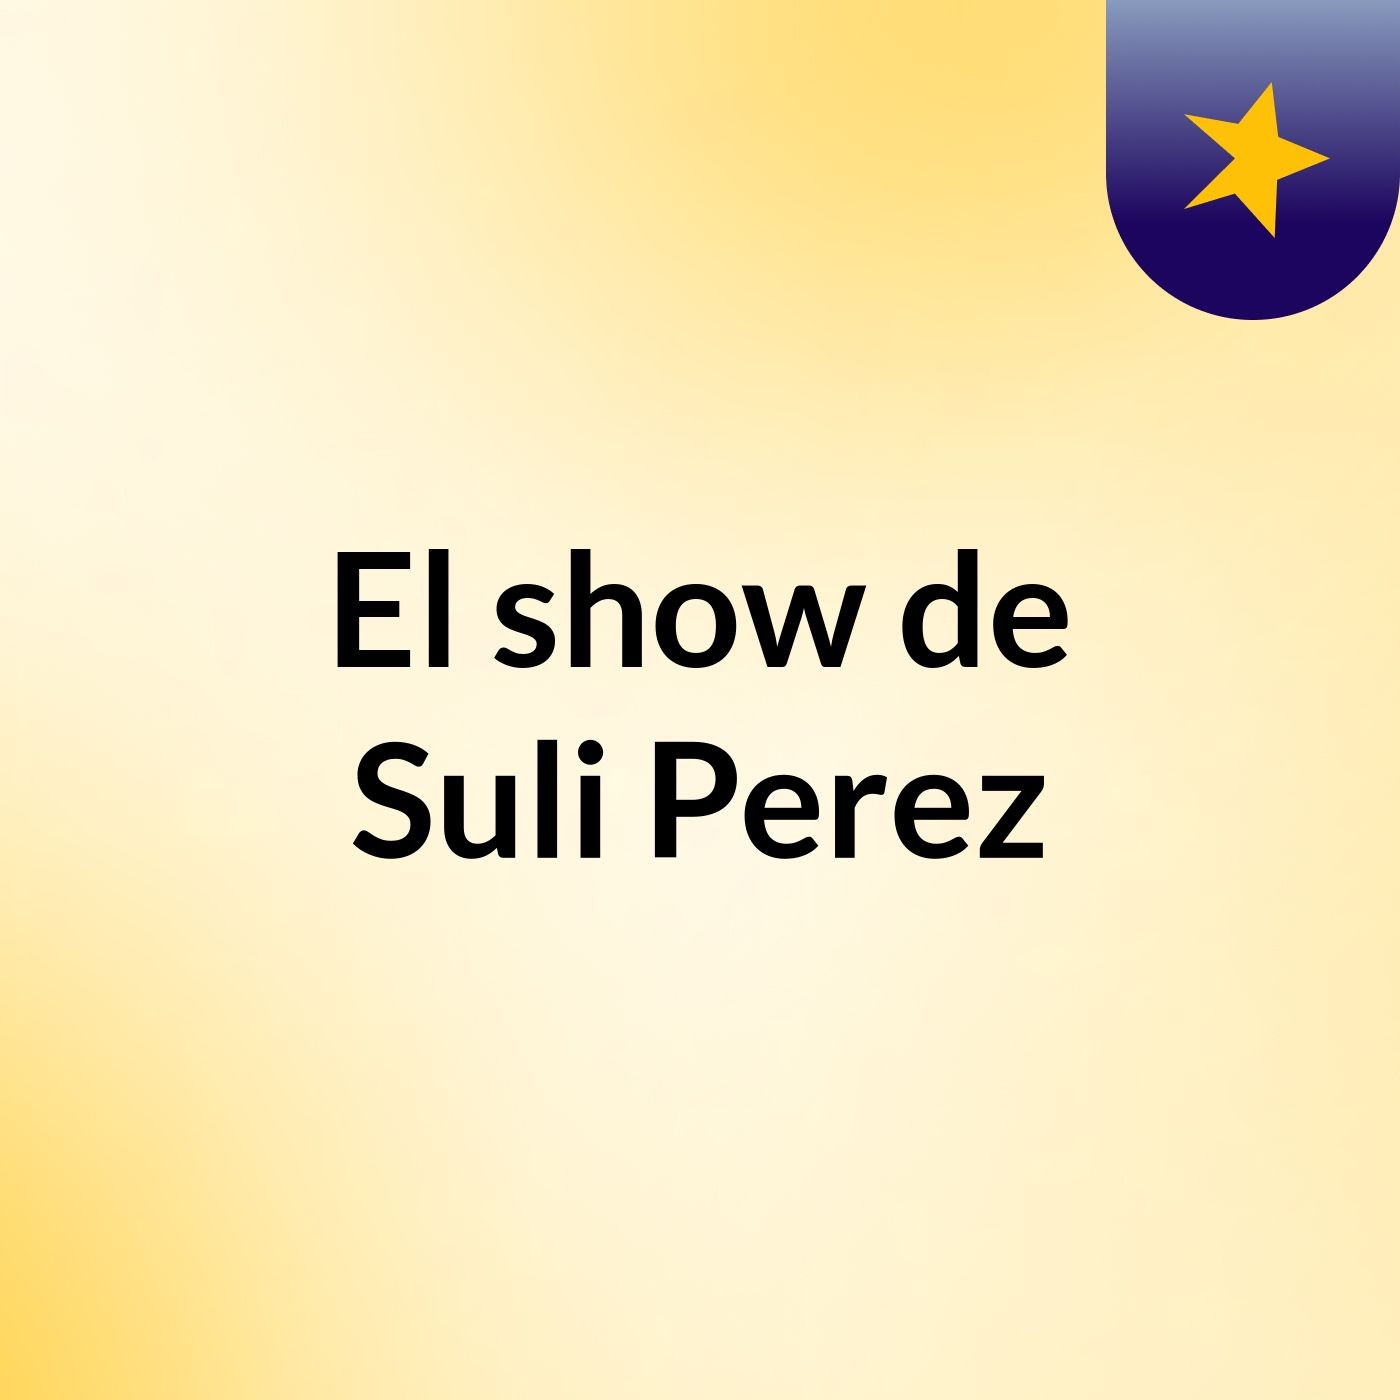 El show de Suli Perez